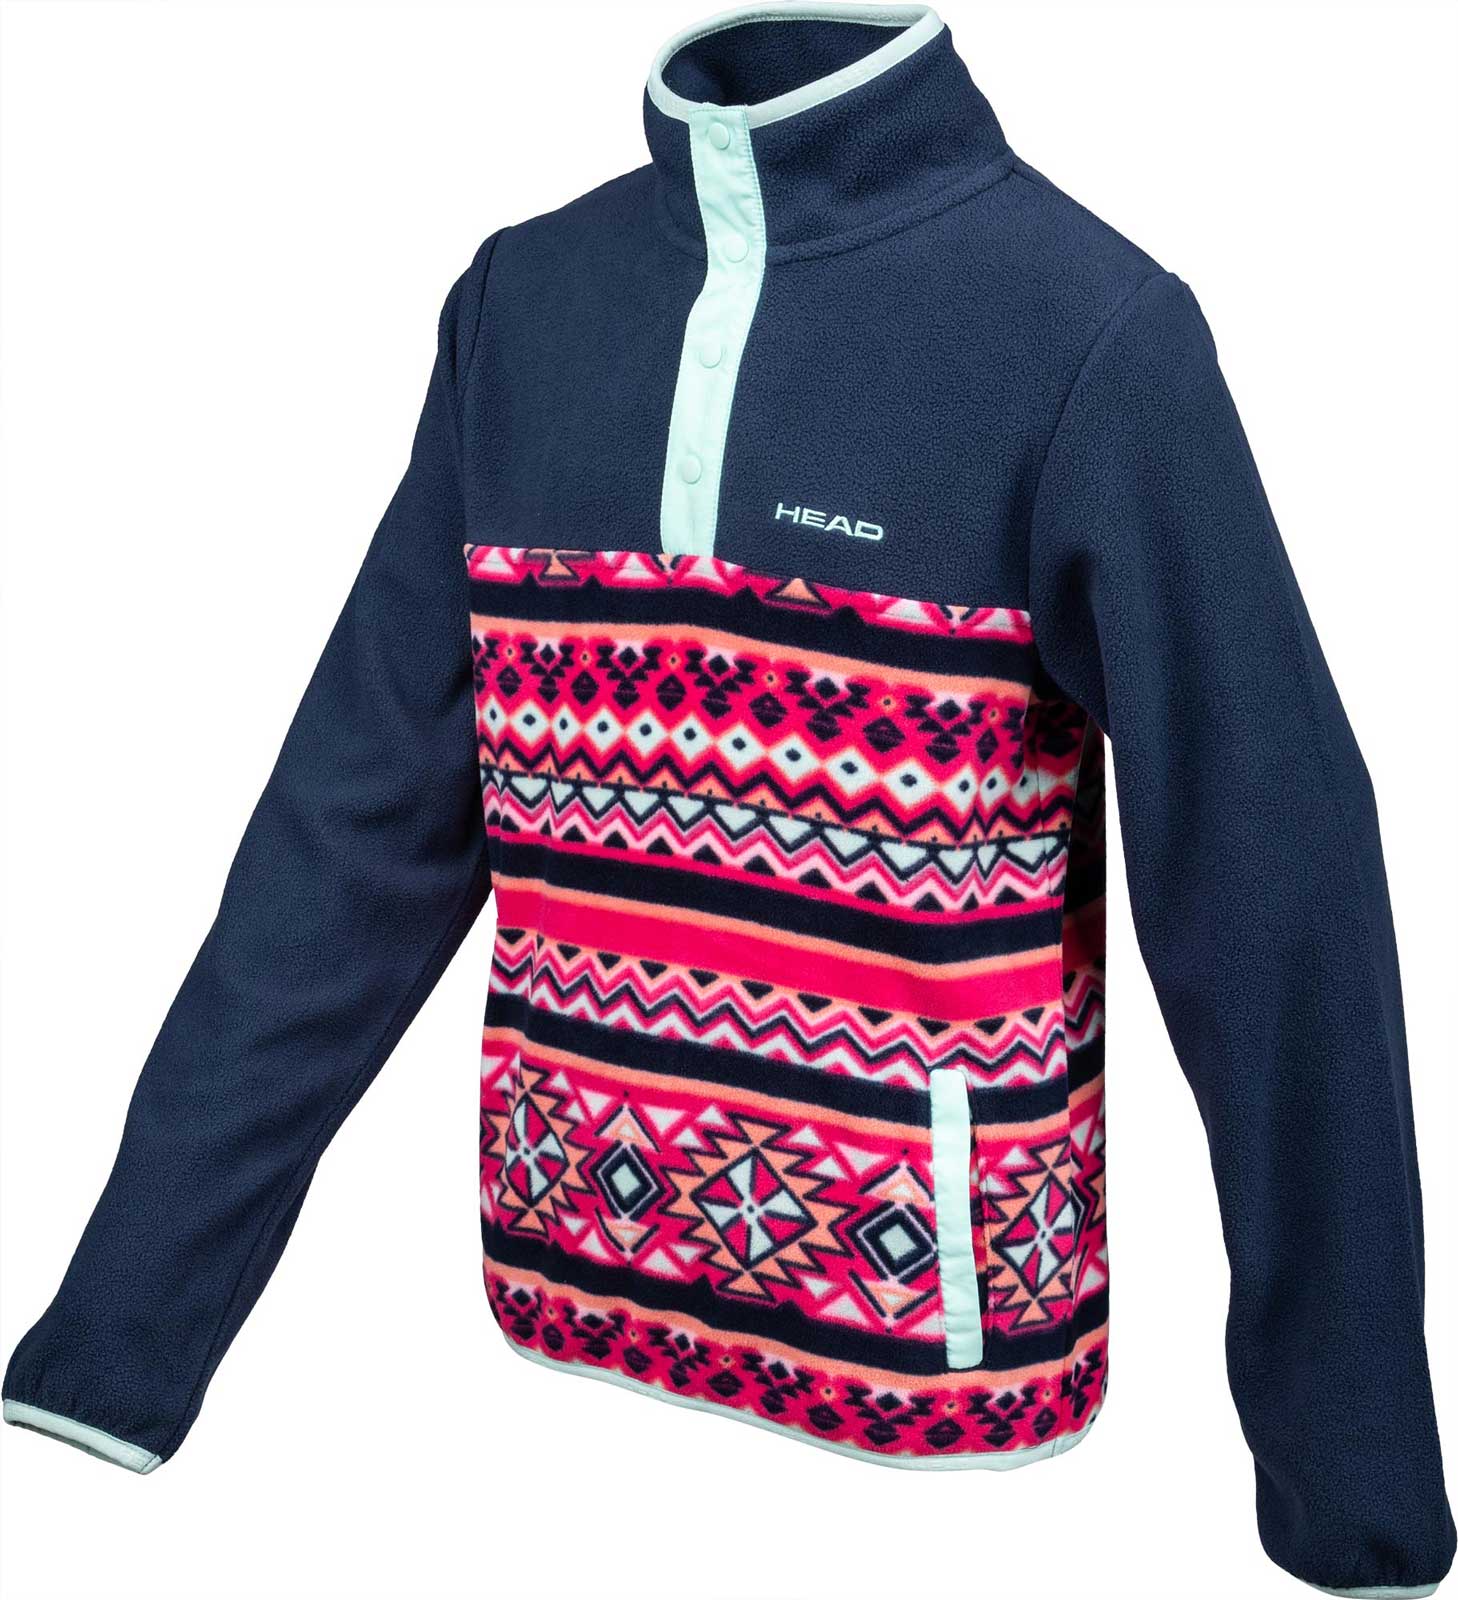 Kids’ fleece sweatshirt